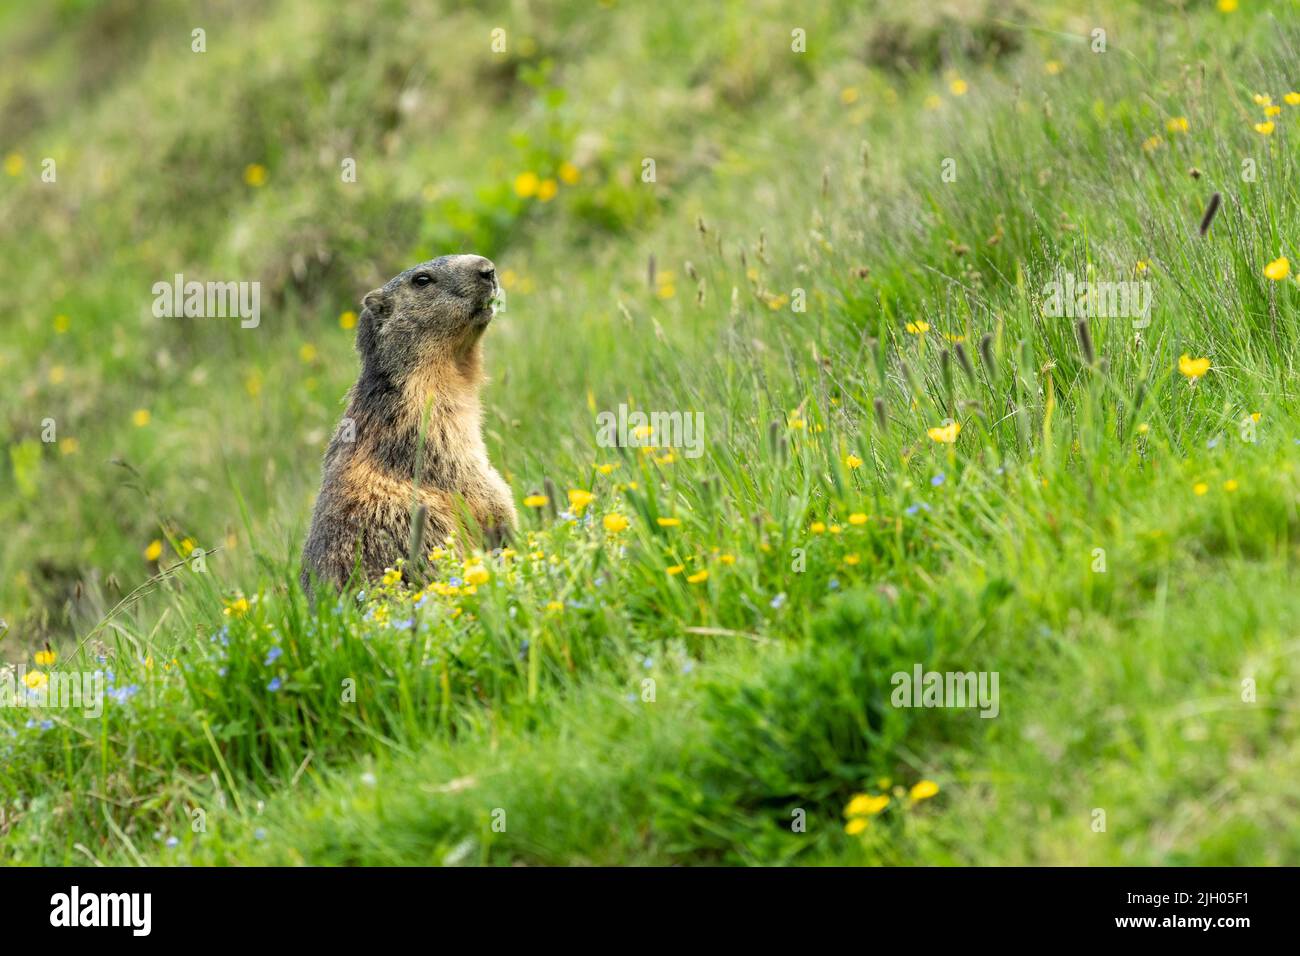 Marmotte alpine (Marmota marmota) se nourrissant d'un terrain d'herbe luxuriant dans les montagnes. Brigels, Surselva, Grisons, Suisse. Banque D'Images